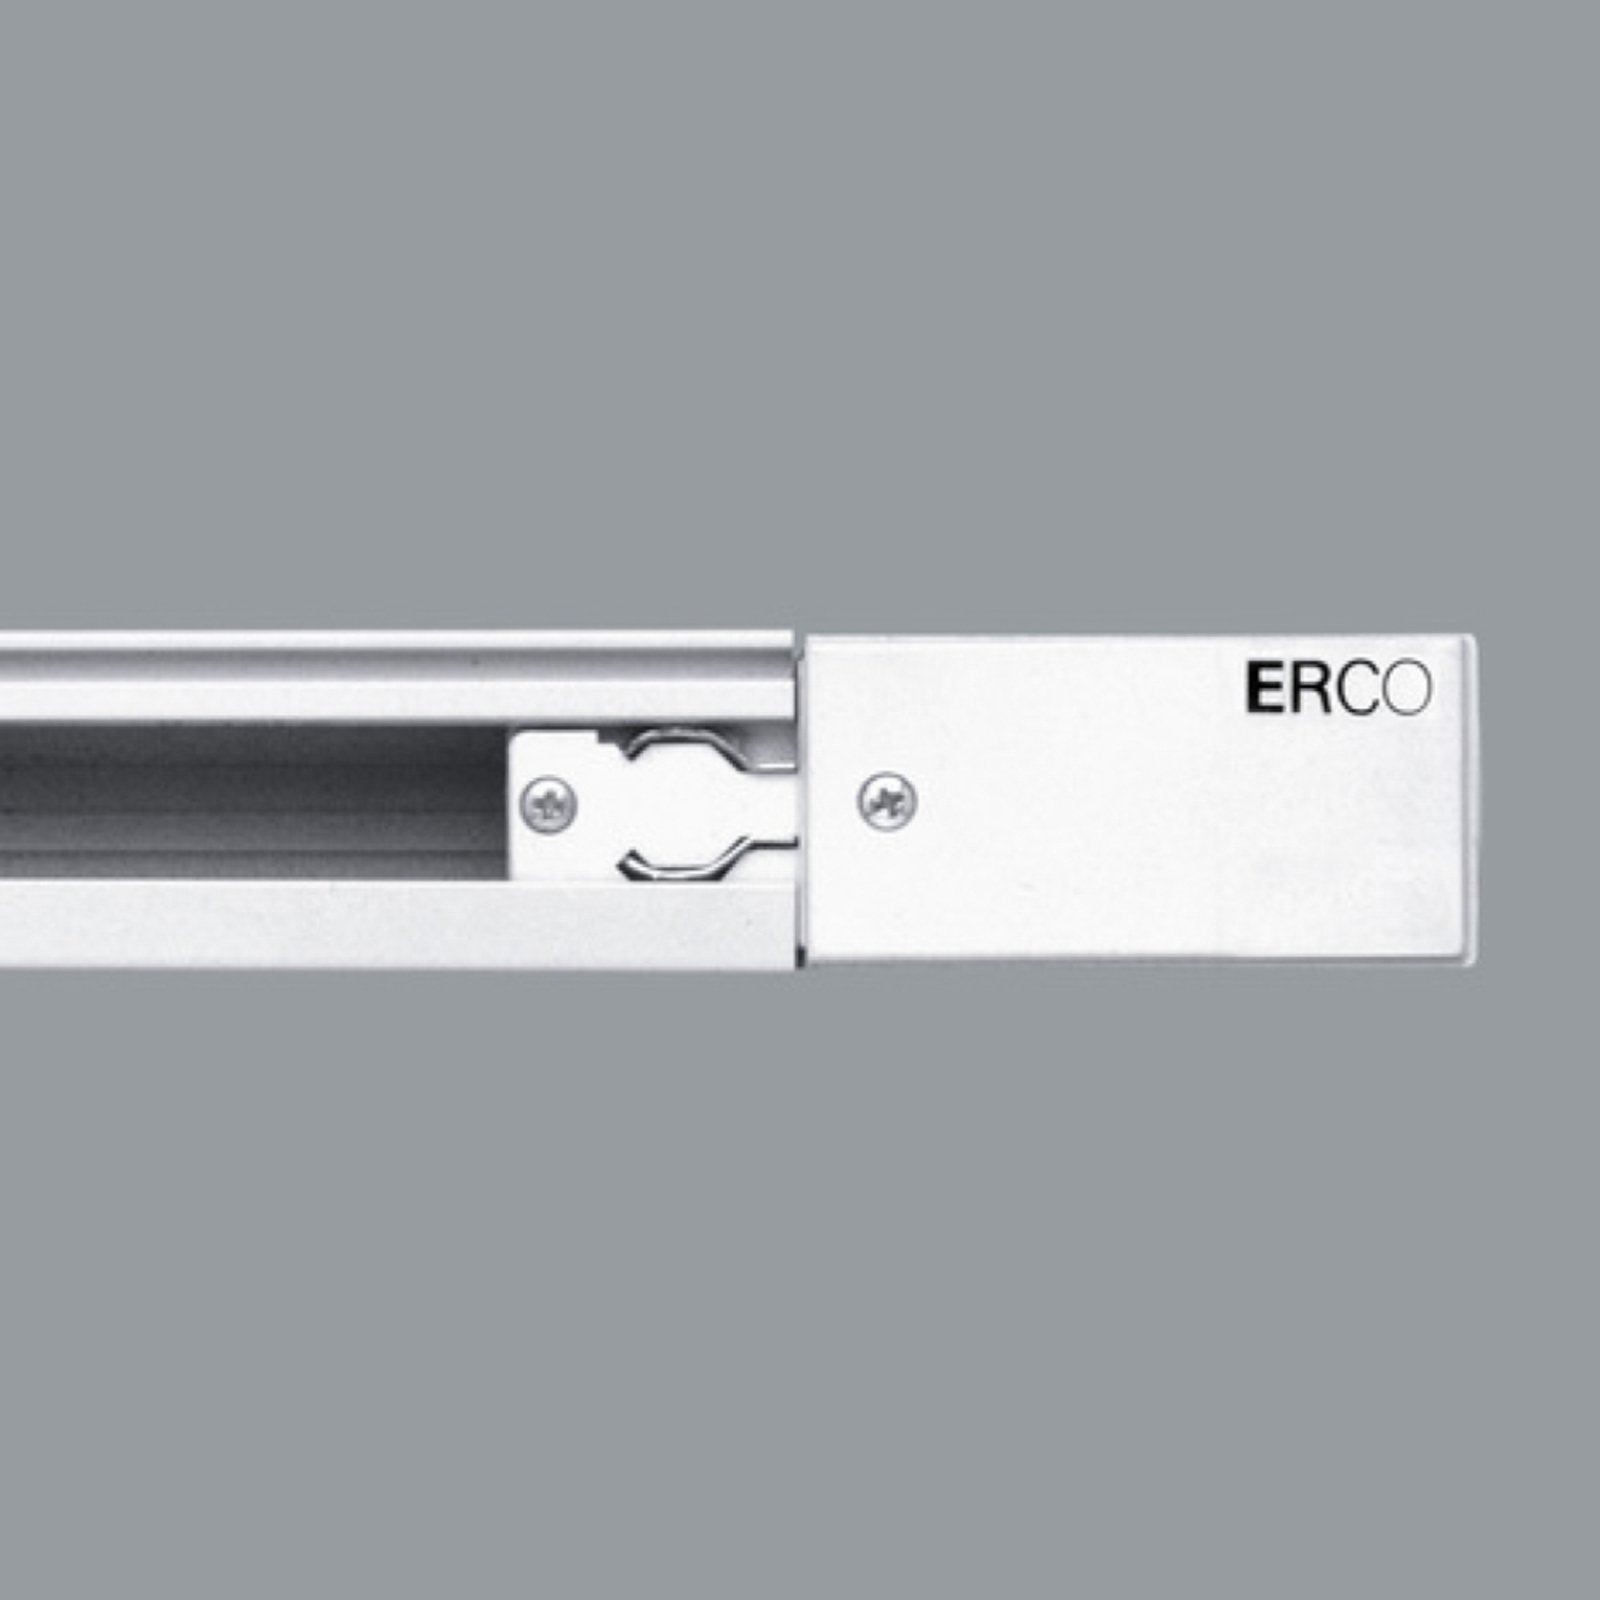 ERCO 3-faset forsyning jordledning højre, hvid